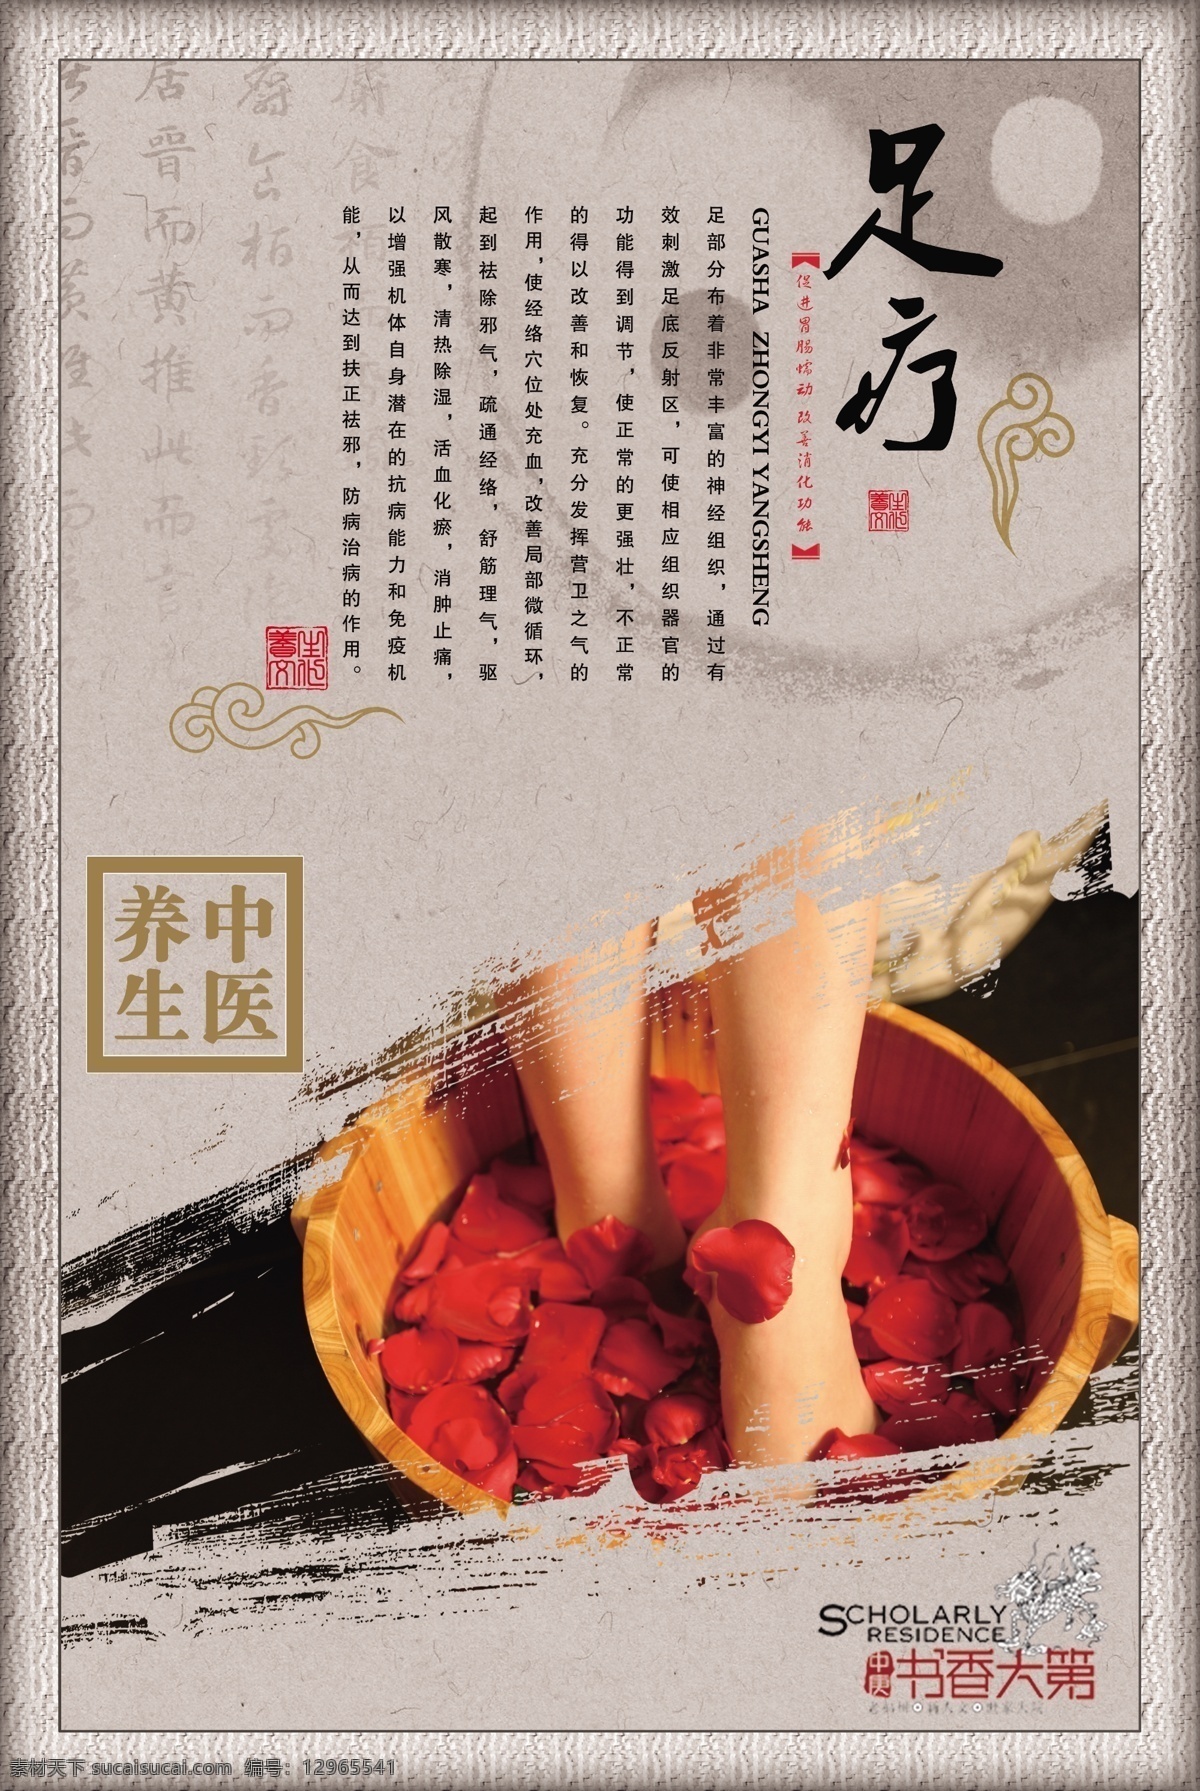 足疗 养生 海报 中医 中国风 传统 中医足疗 传统文化 背景 底纹 广告设计模板 源文件